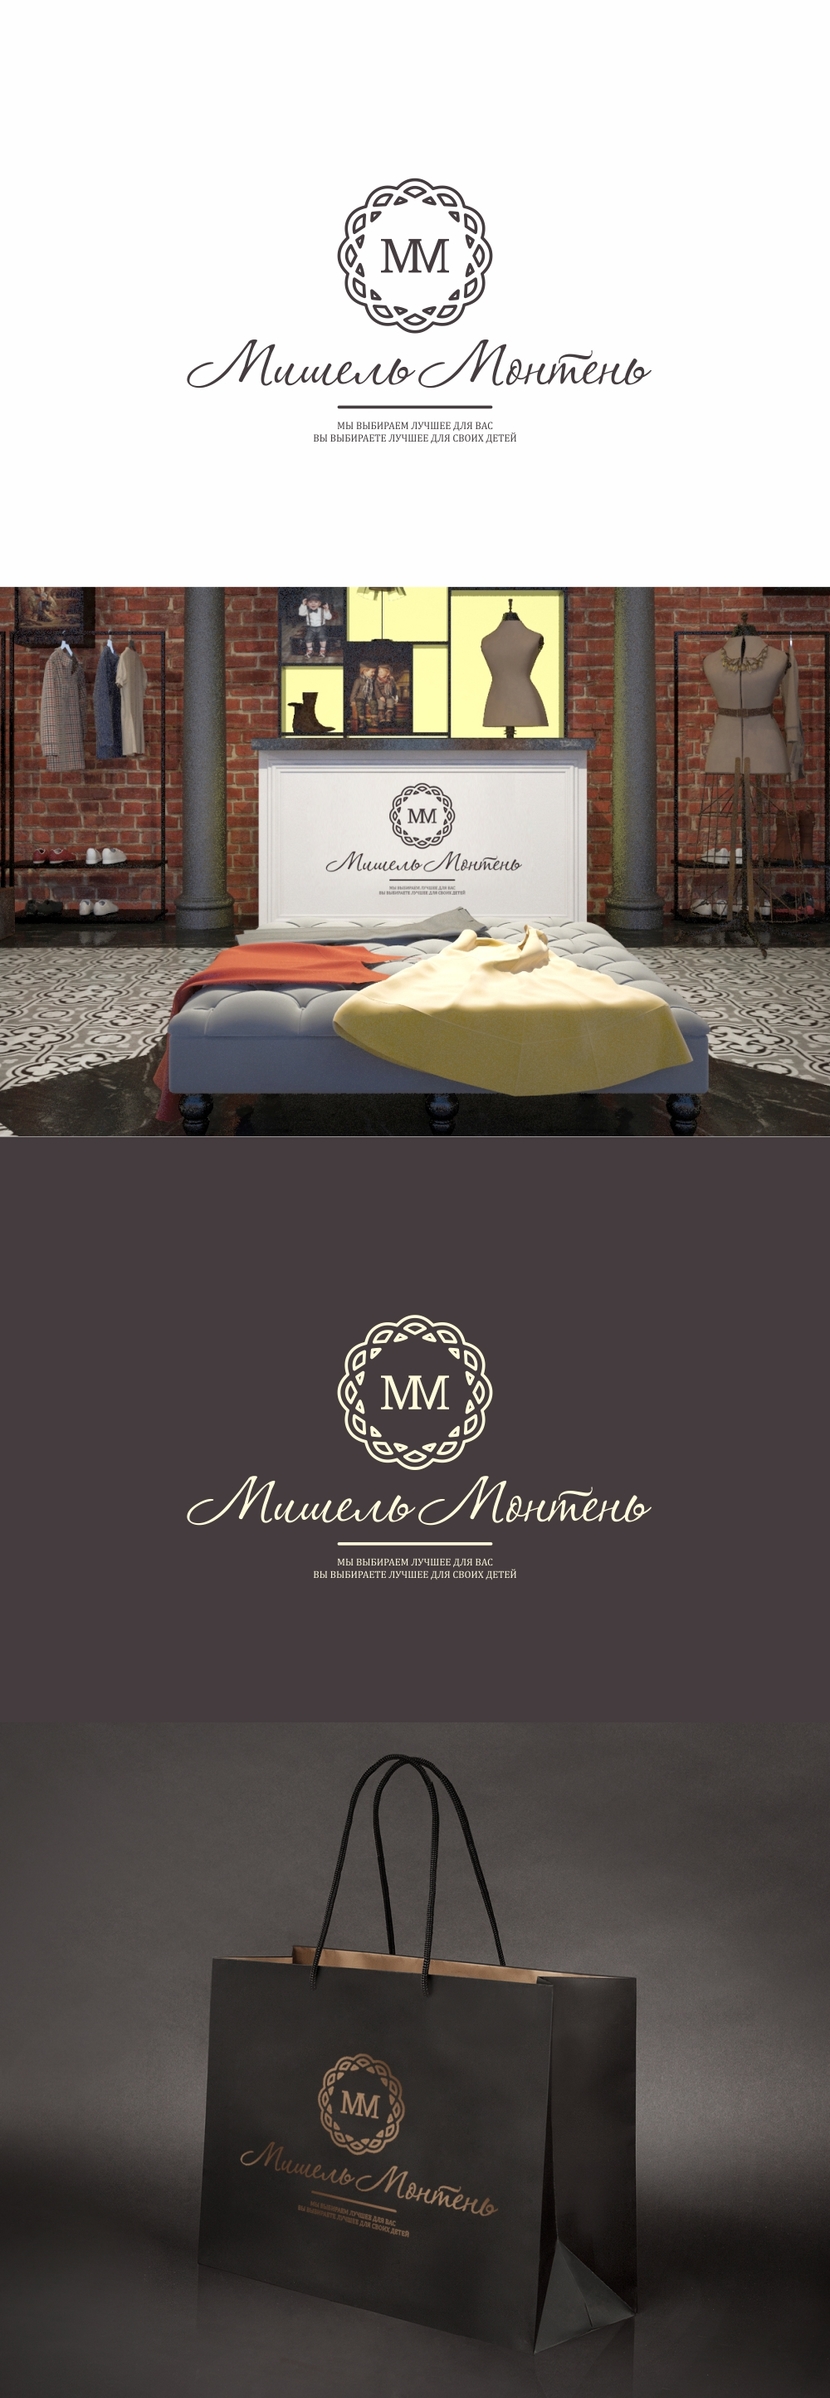 Логотип и фирменный стиль детского бутика Мишель Монтень